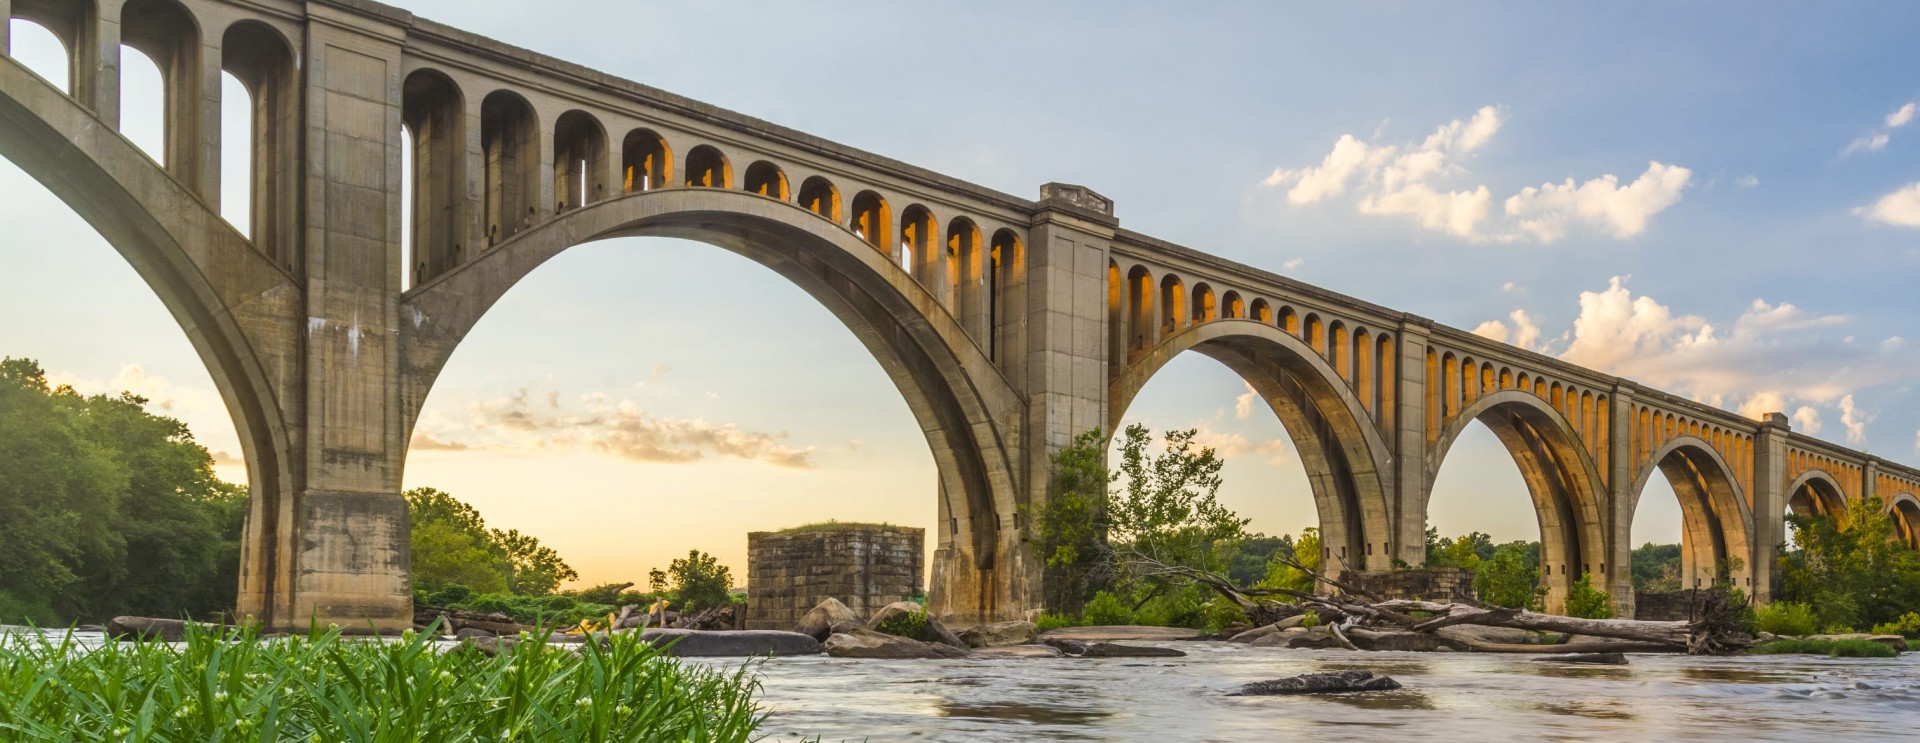 Bridge over James River in Virginia